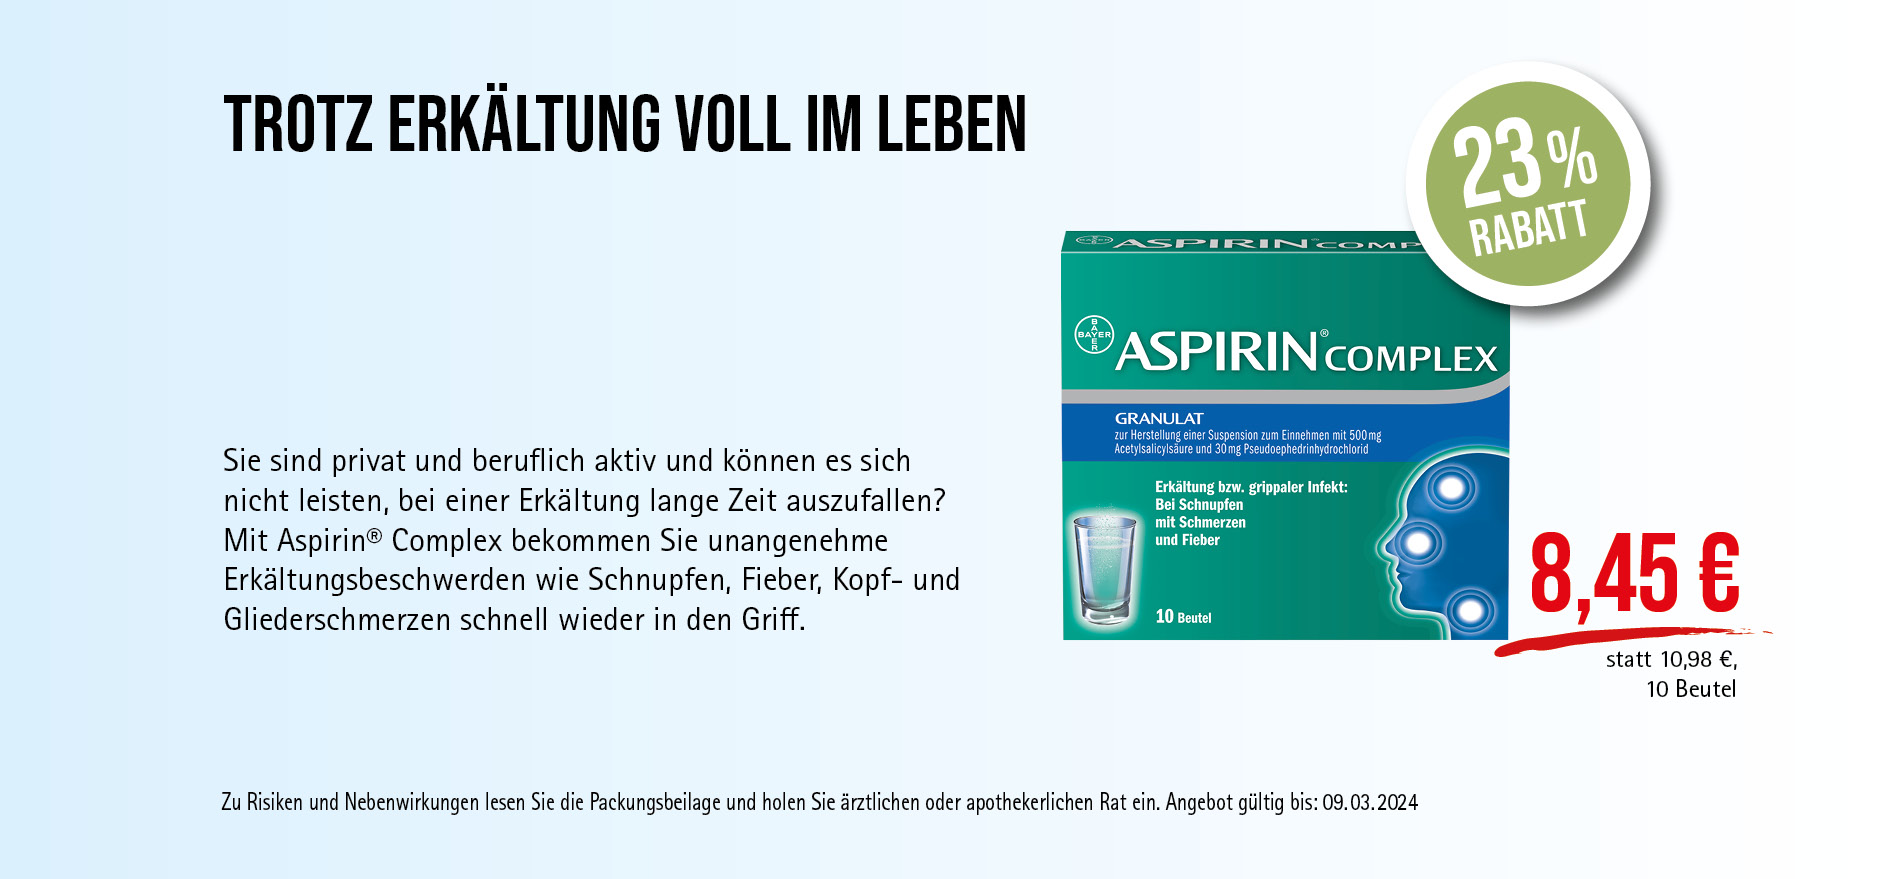 Aspirin® Complex, 8,45€ statt 10,98€, Angebot gültig bis 09.03.2024, zu Risiken und Nebenwirkungen lesen Sie die Packungsbeilage und holen Sie ärztlichen oder apothekerlichen Rat ein